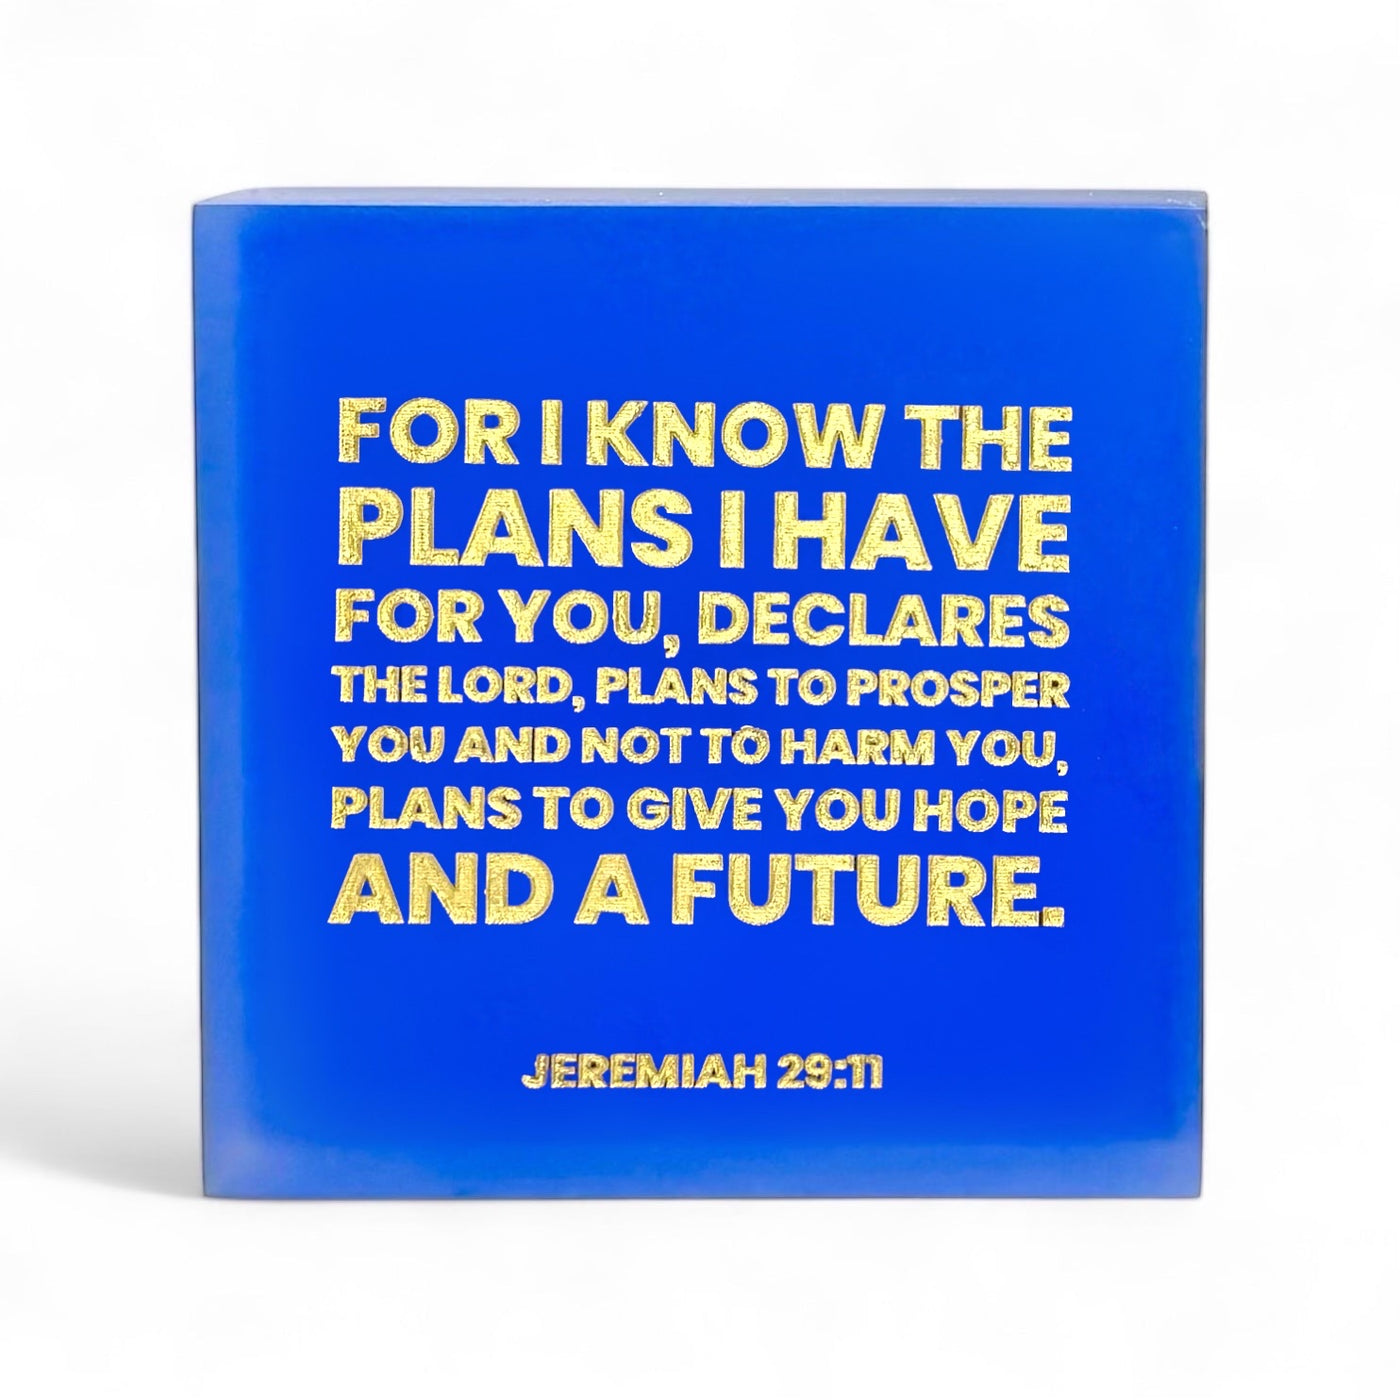 Jeremiah 29:11